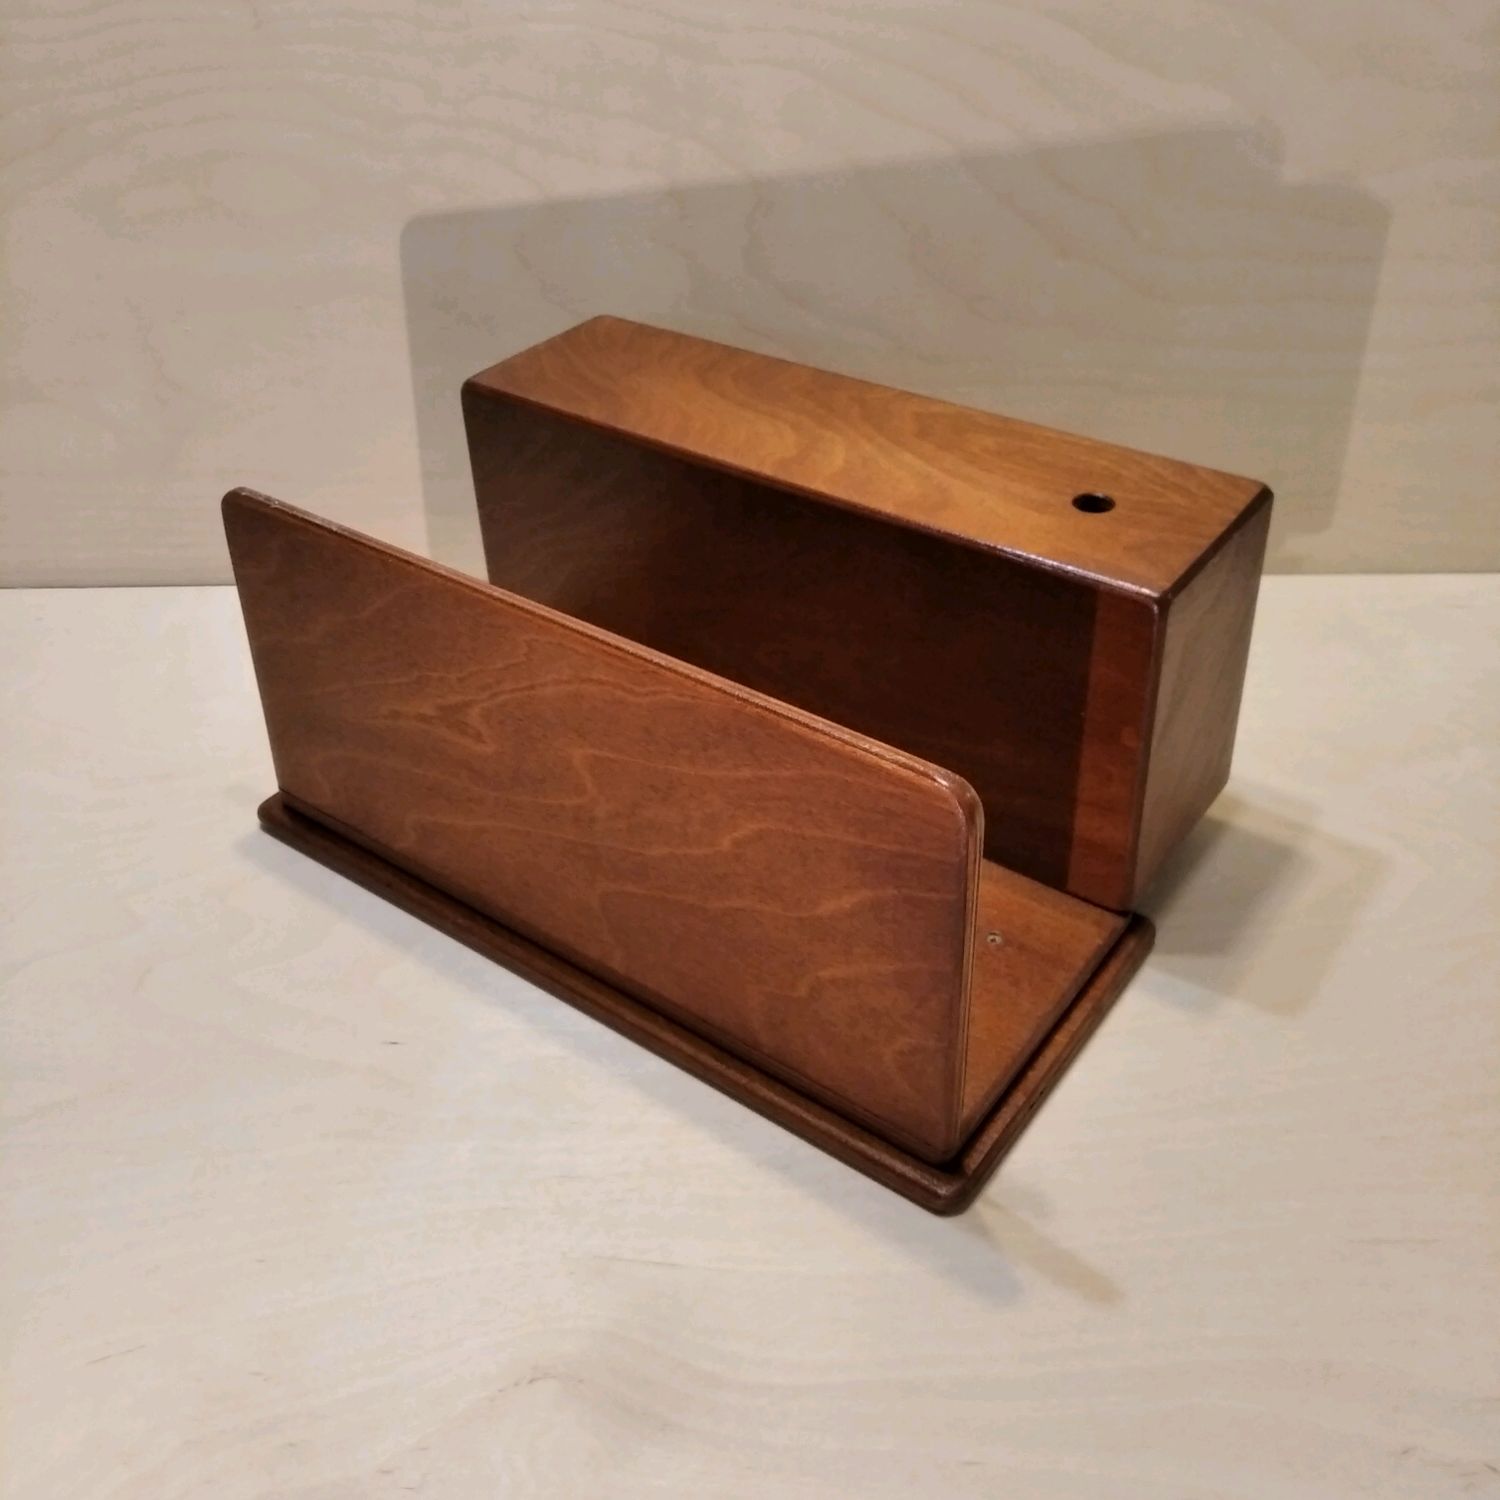 подставка на подлокотник дивана деревянная икеа